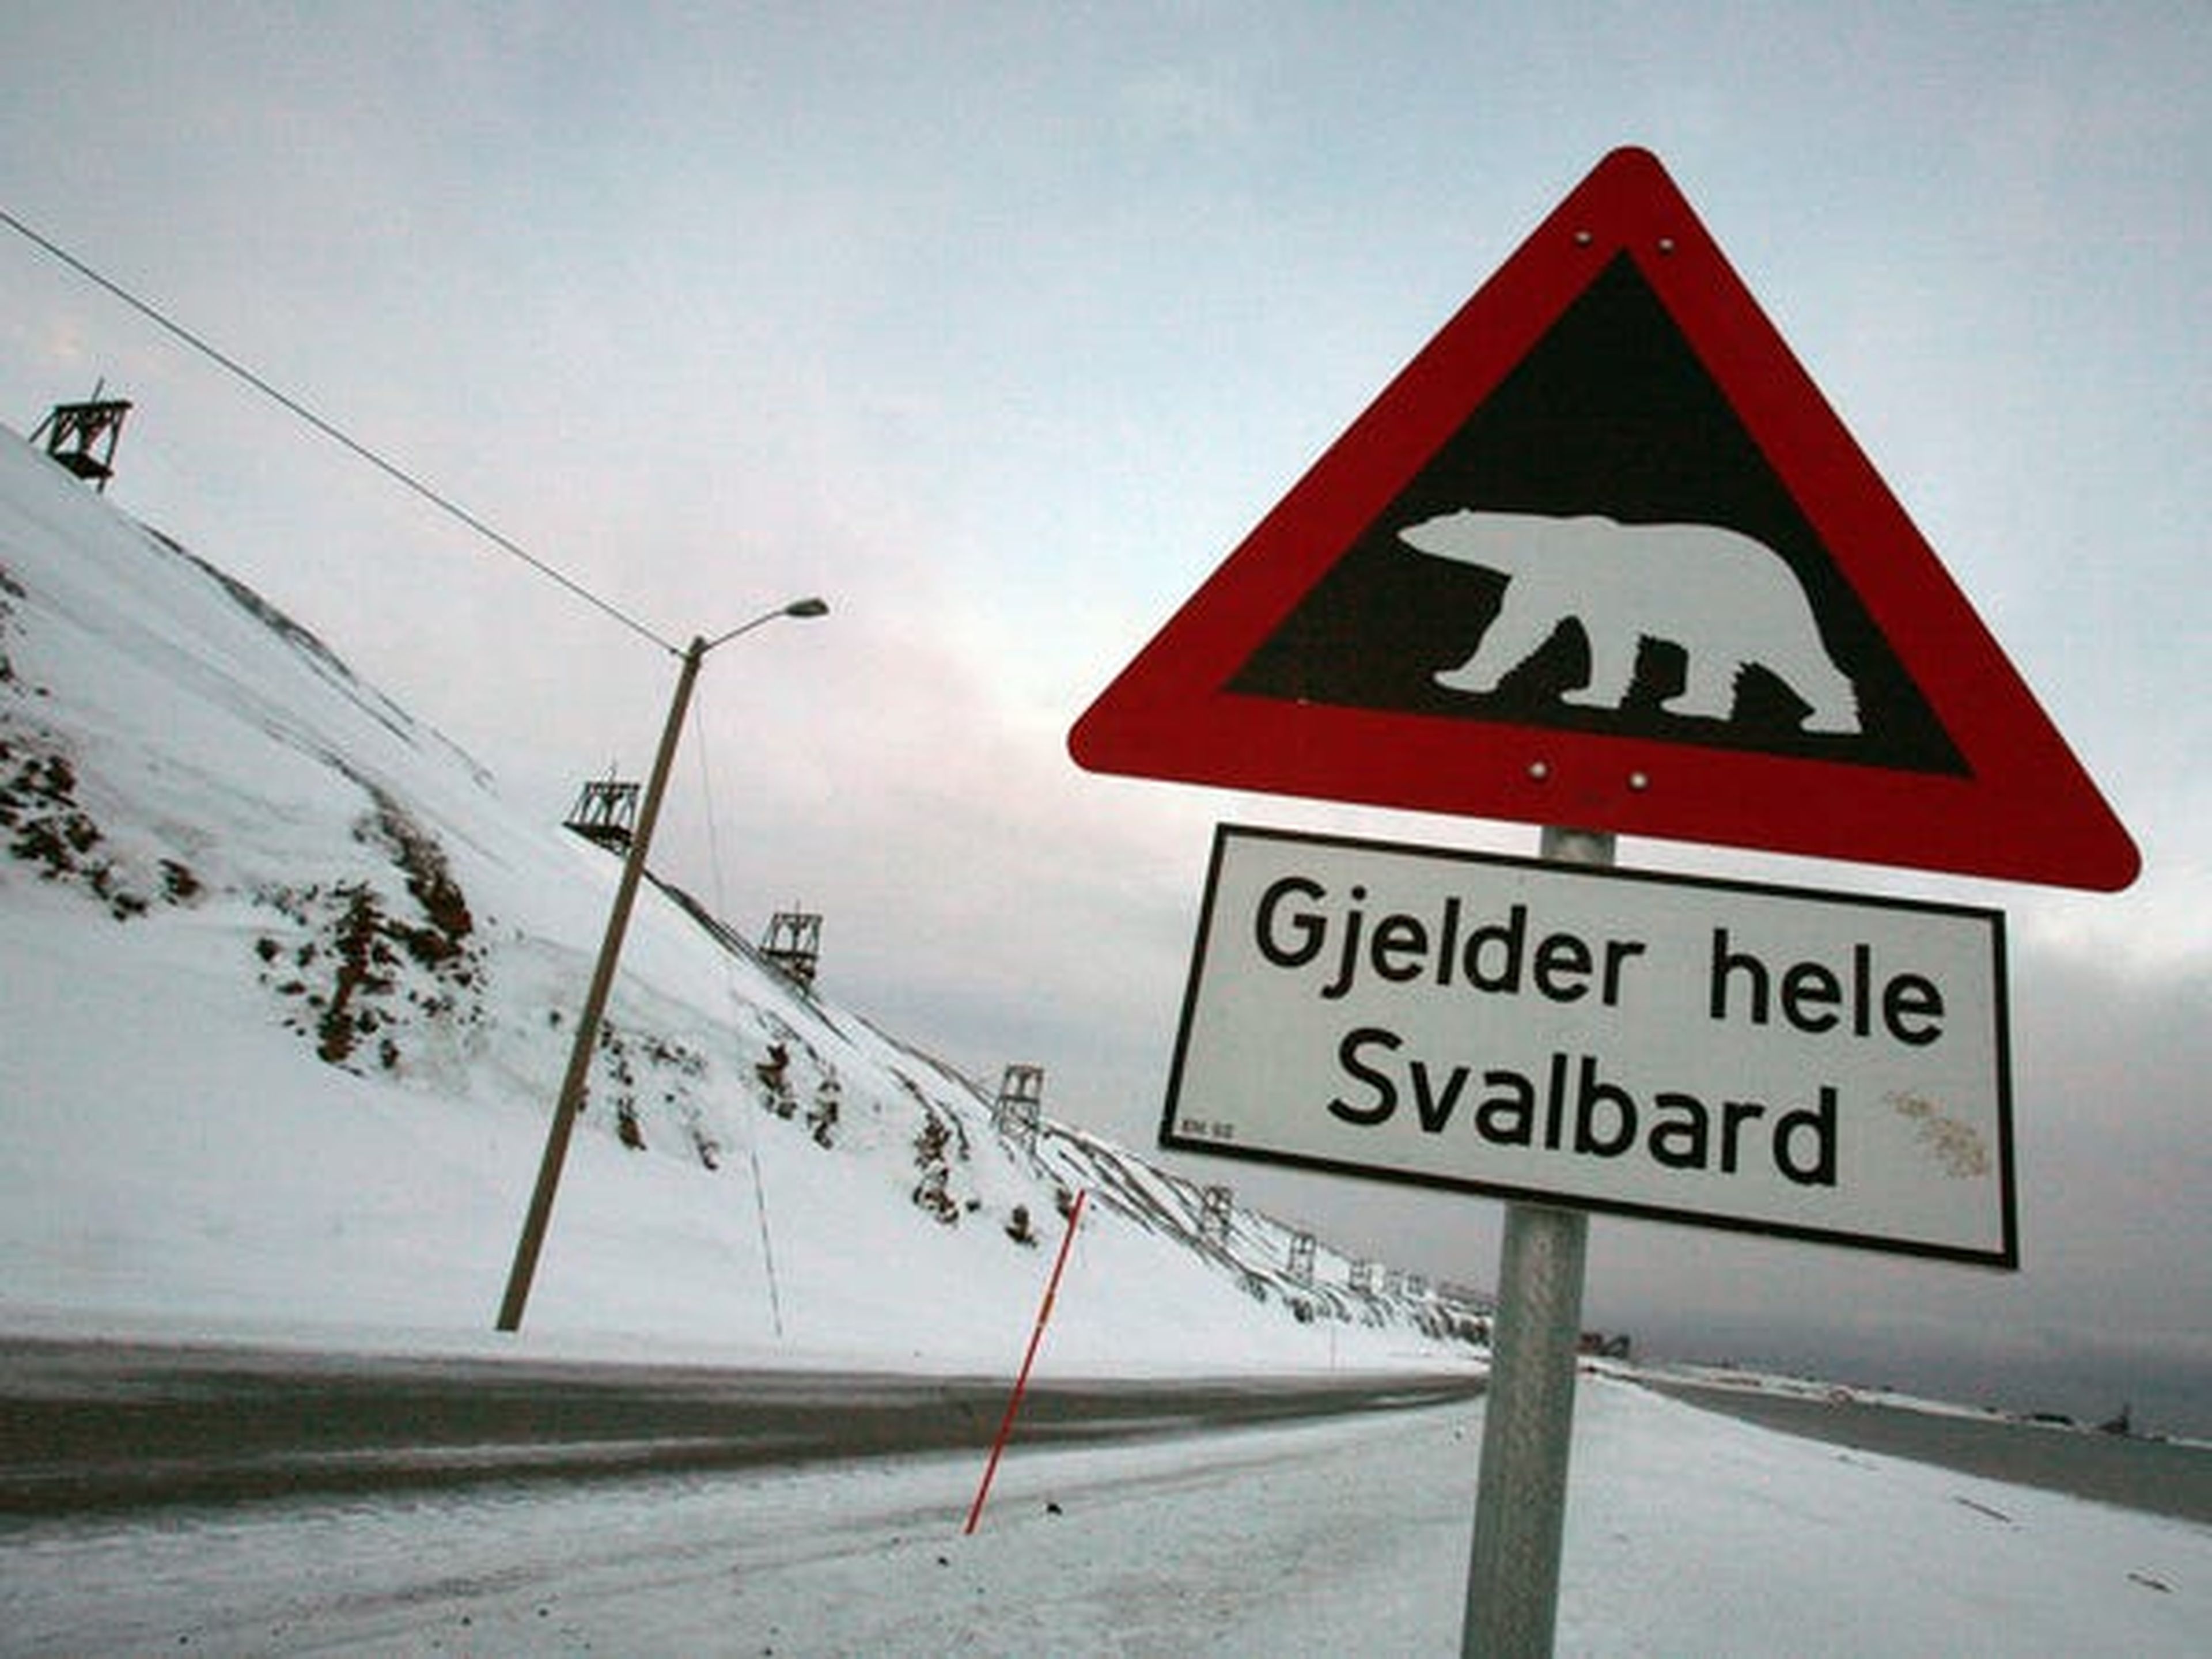 La señal de advertencia significa "Se aplica a todo el territorio de Svalbard".